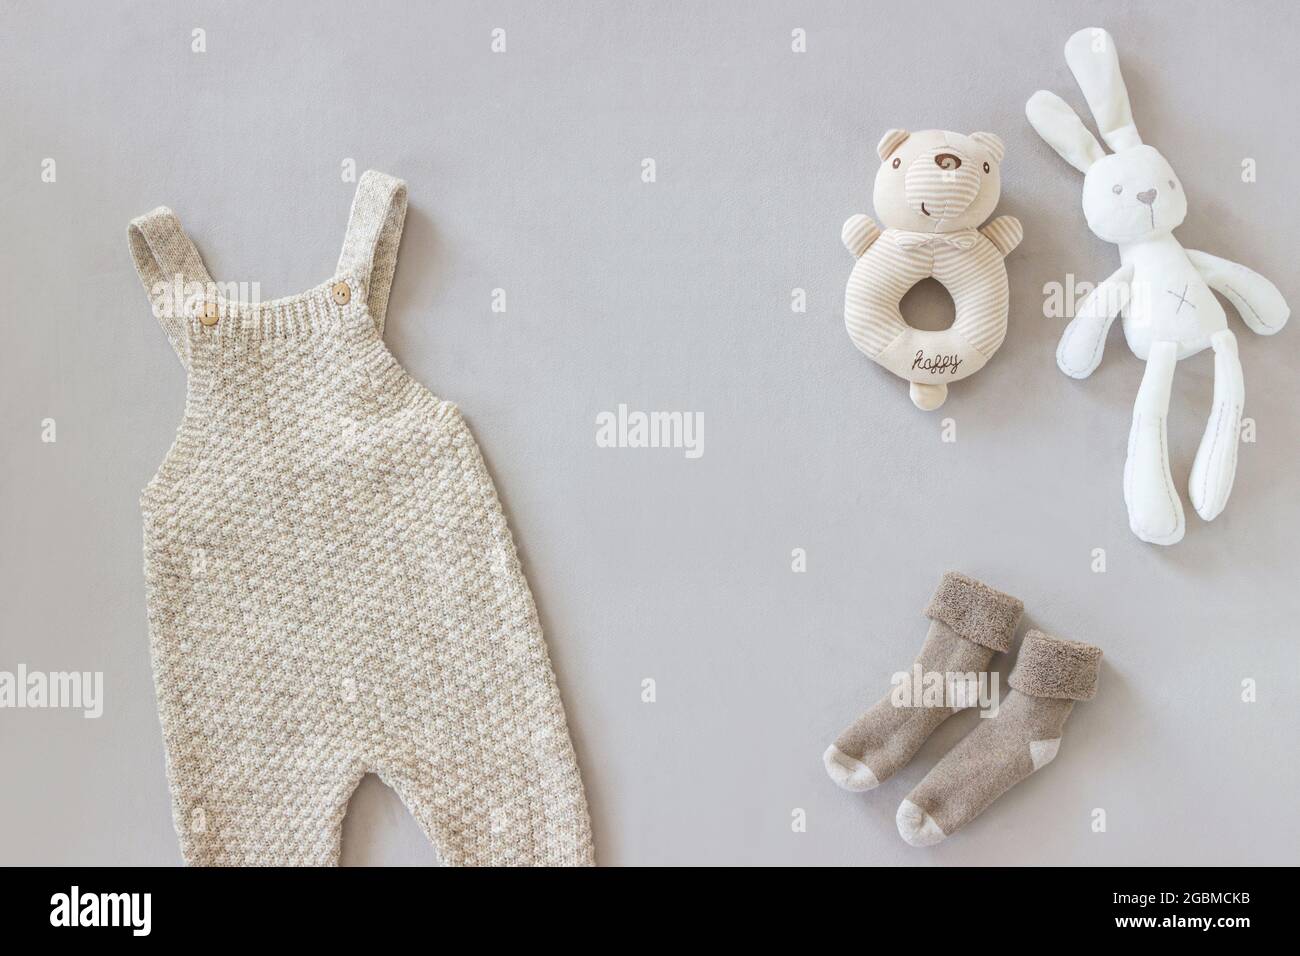 Accesorios para recién nacidos fotografías e imágenes de alta resolución -  Página 3 - Alamy